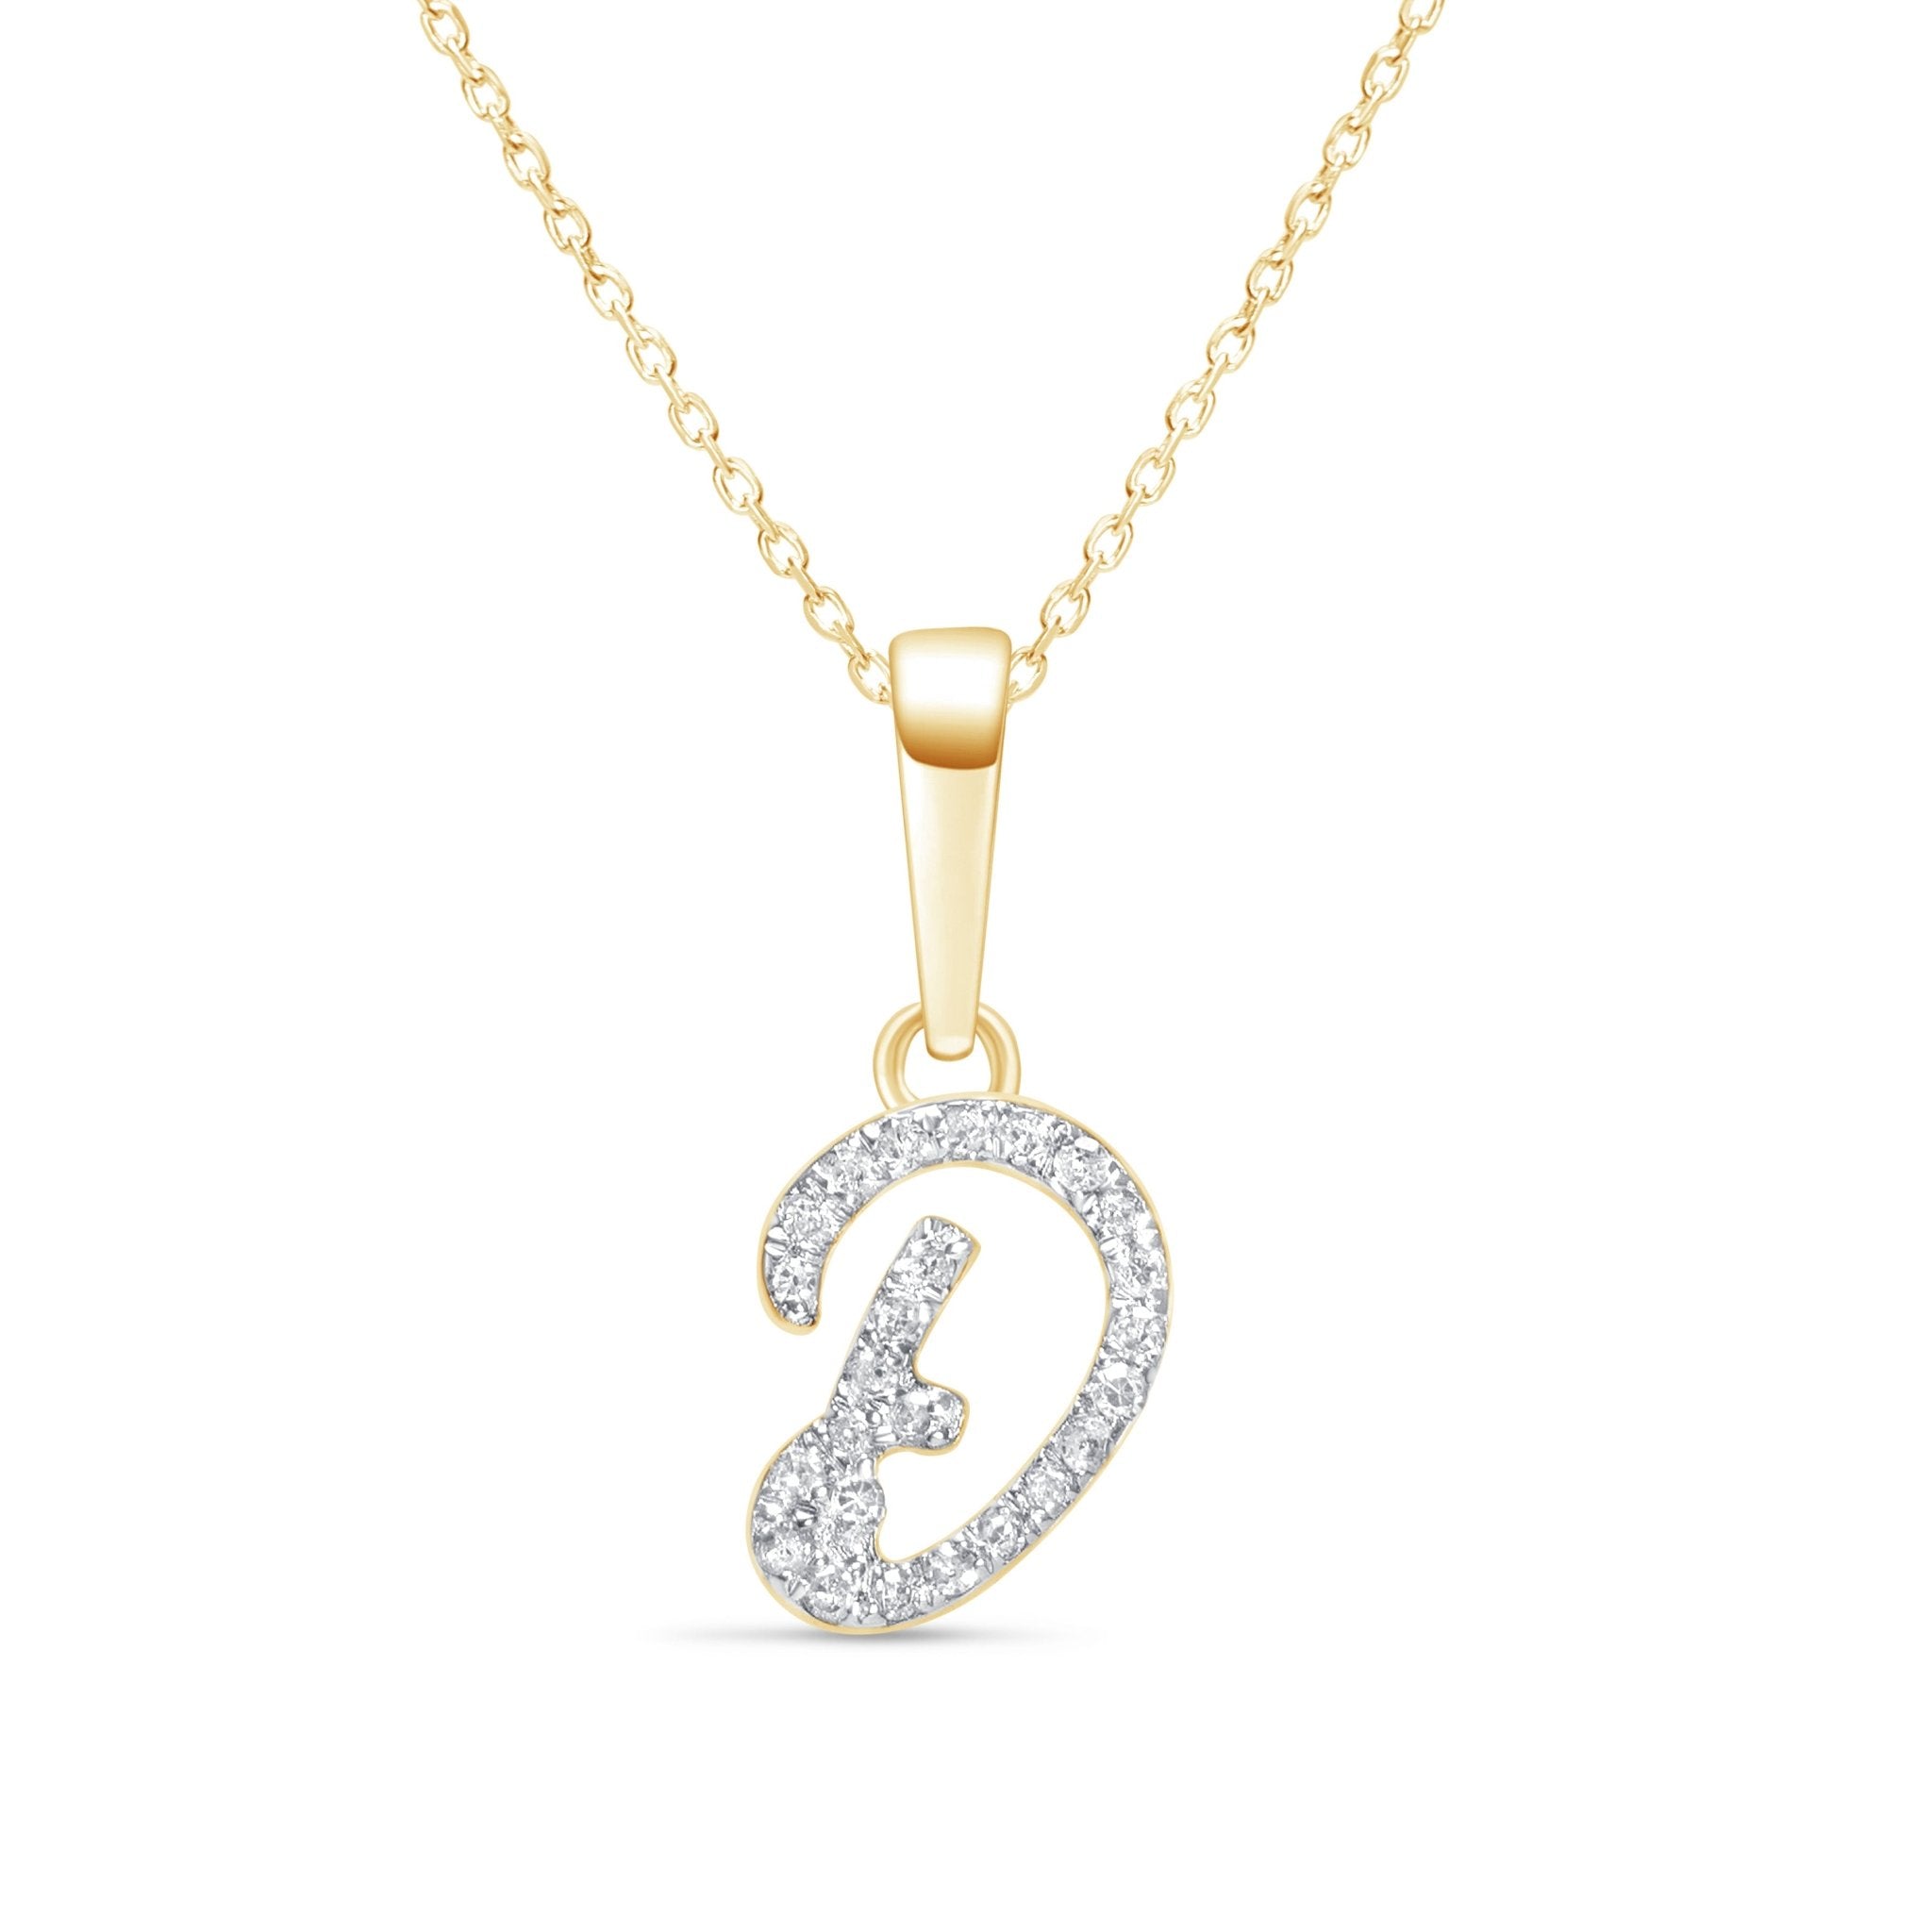 Cursive Diamond Initial Necklace - D Necklaces Estella Collection #product_description# 18557 14k Diamond Gemstone #tag4# #tag5# #tag6# #tag7# #tag8# #tag9# #tag10# 14k Yellow Gold